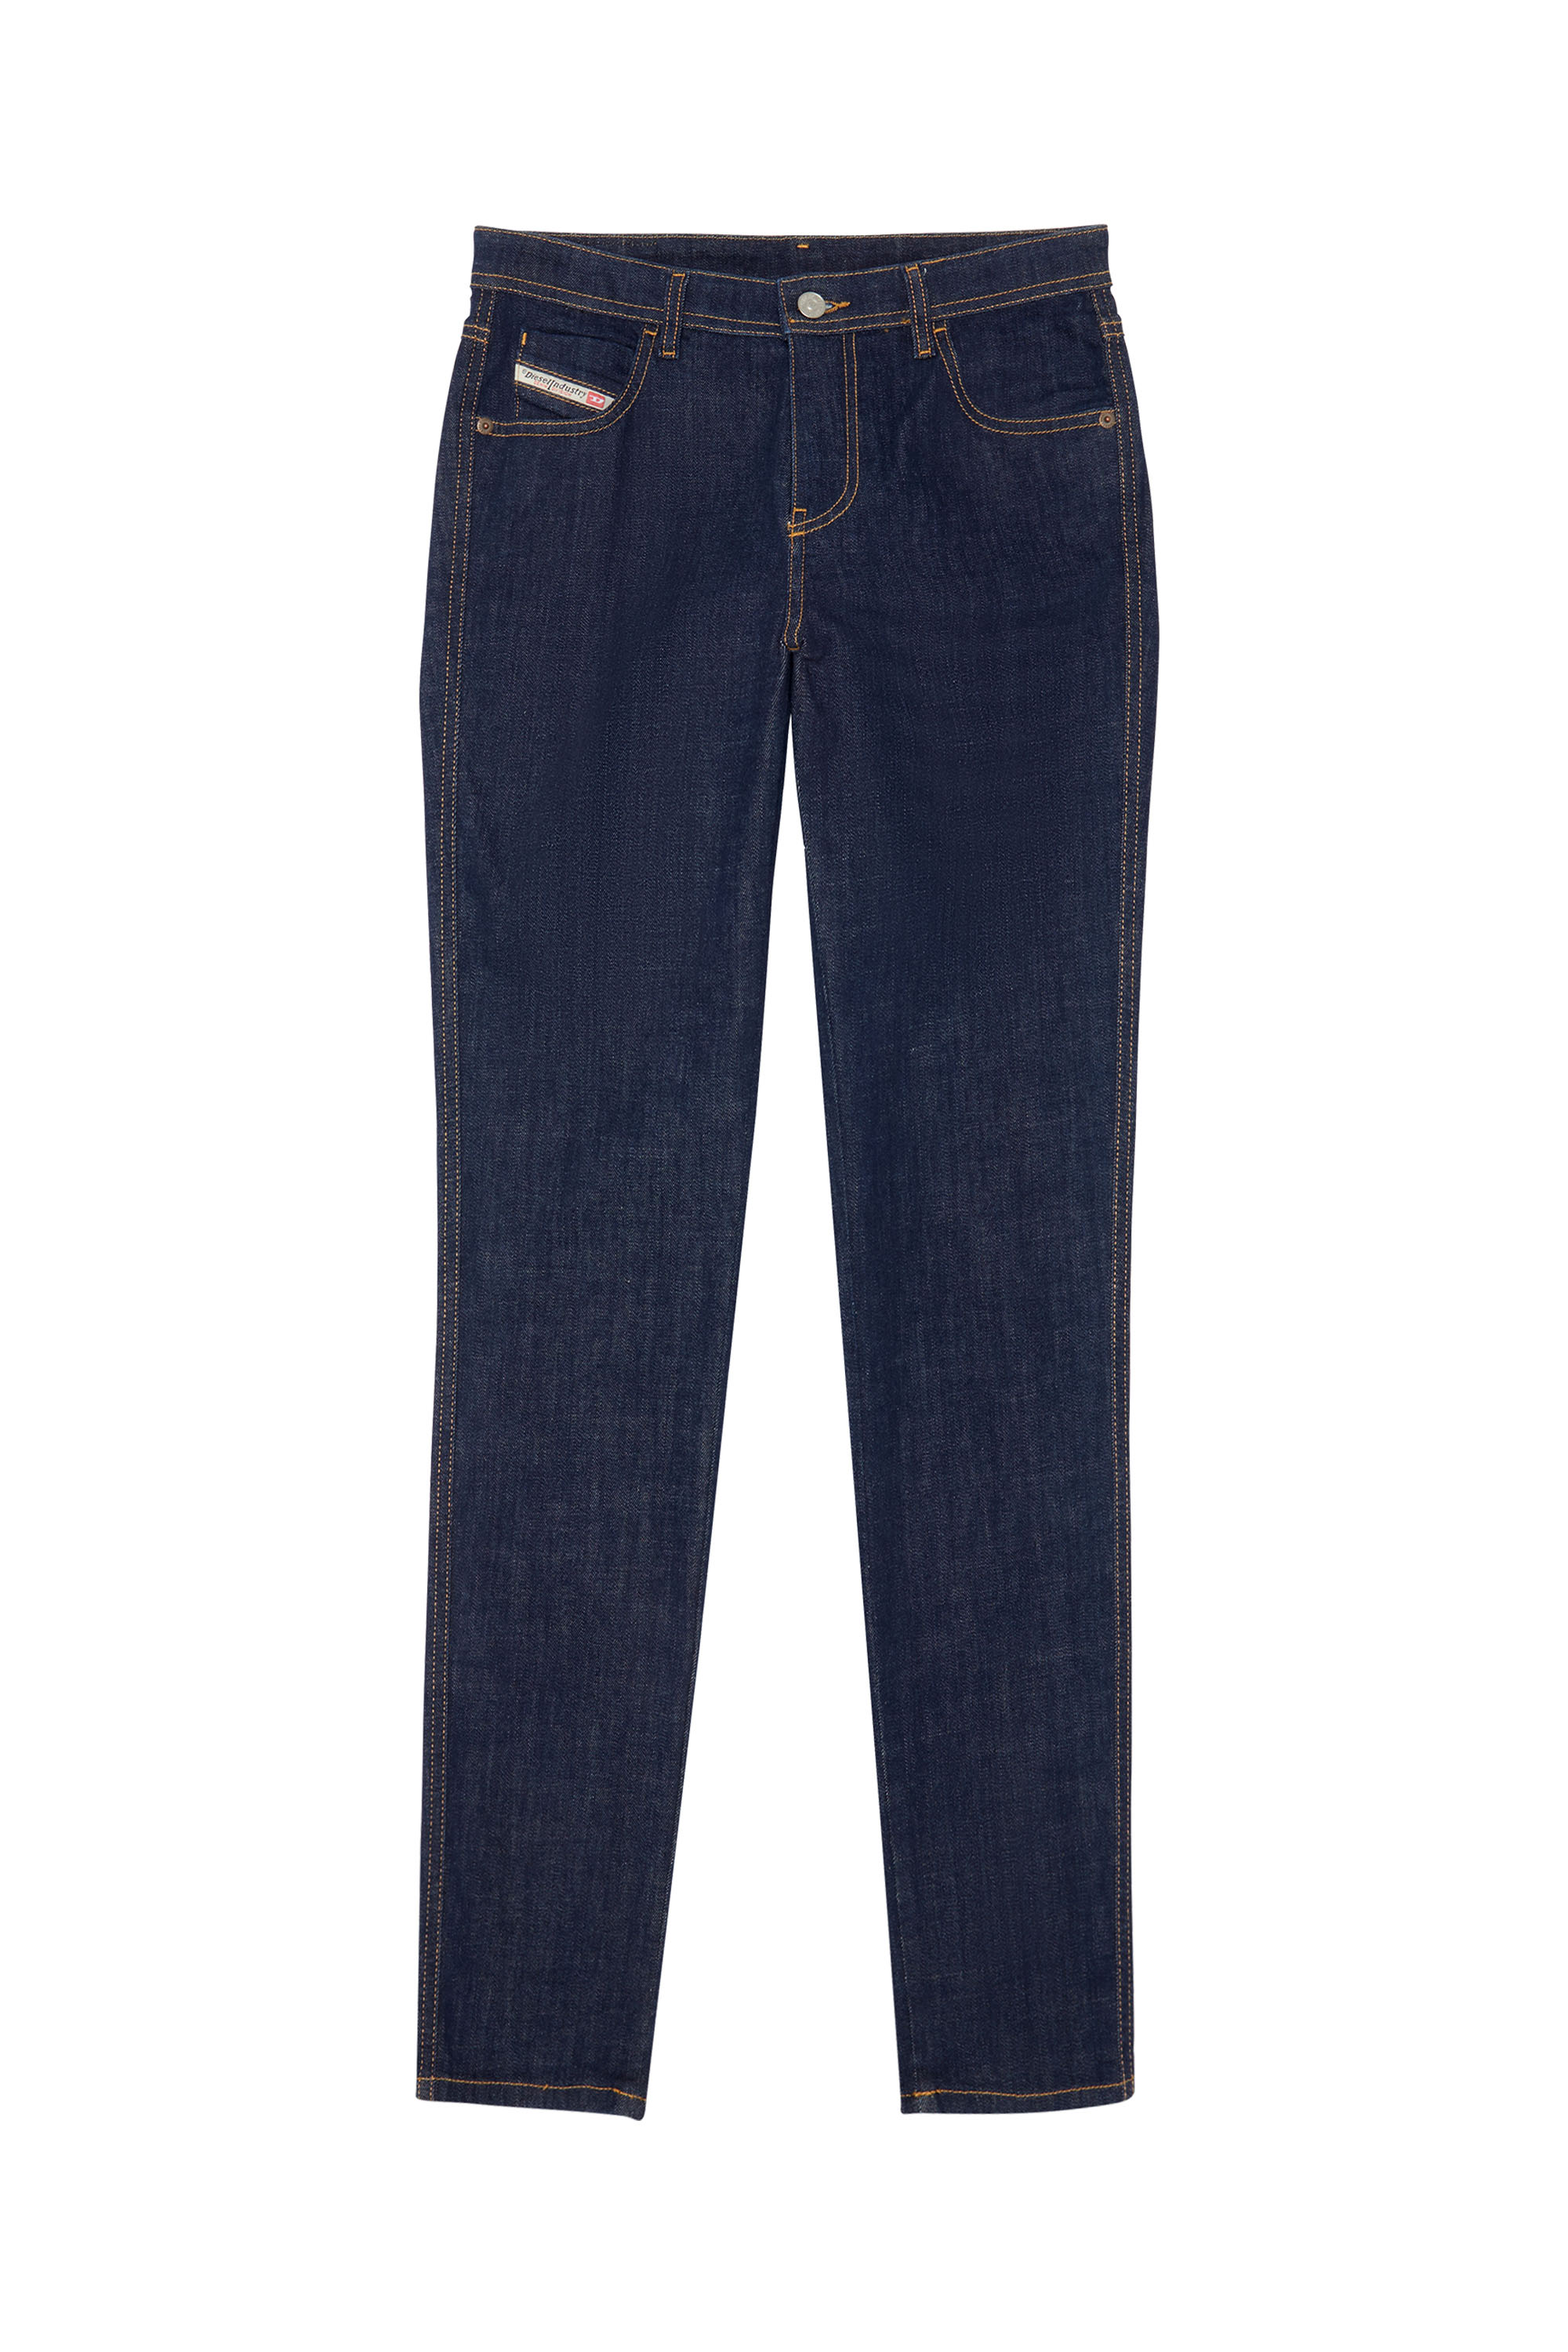 2015 Babhila Z9C17 Skinny Jeans, Dark Blue